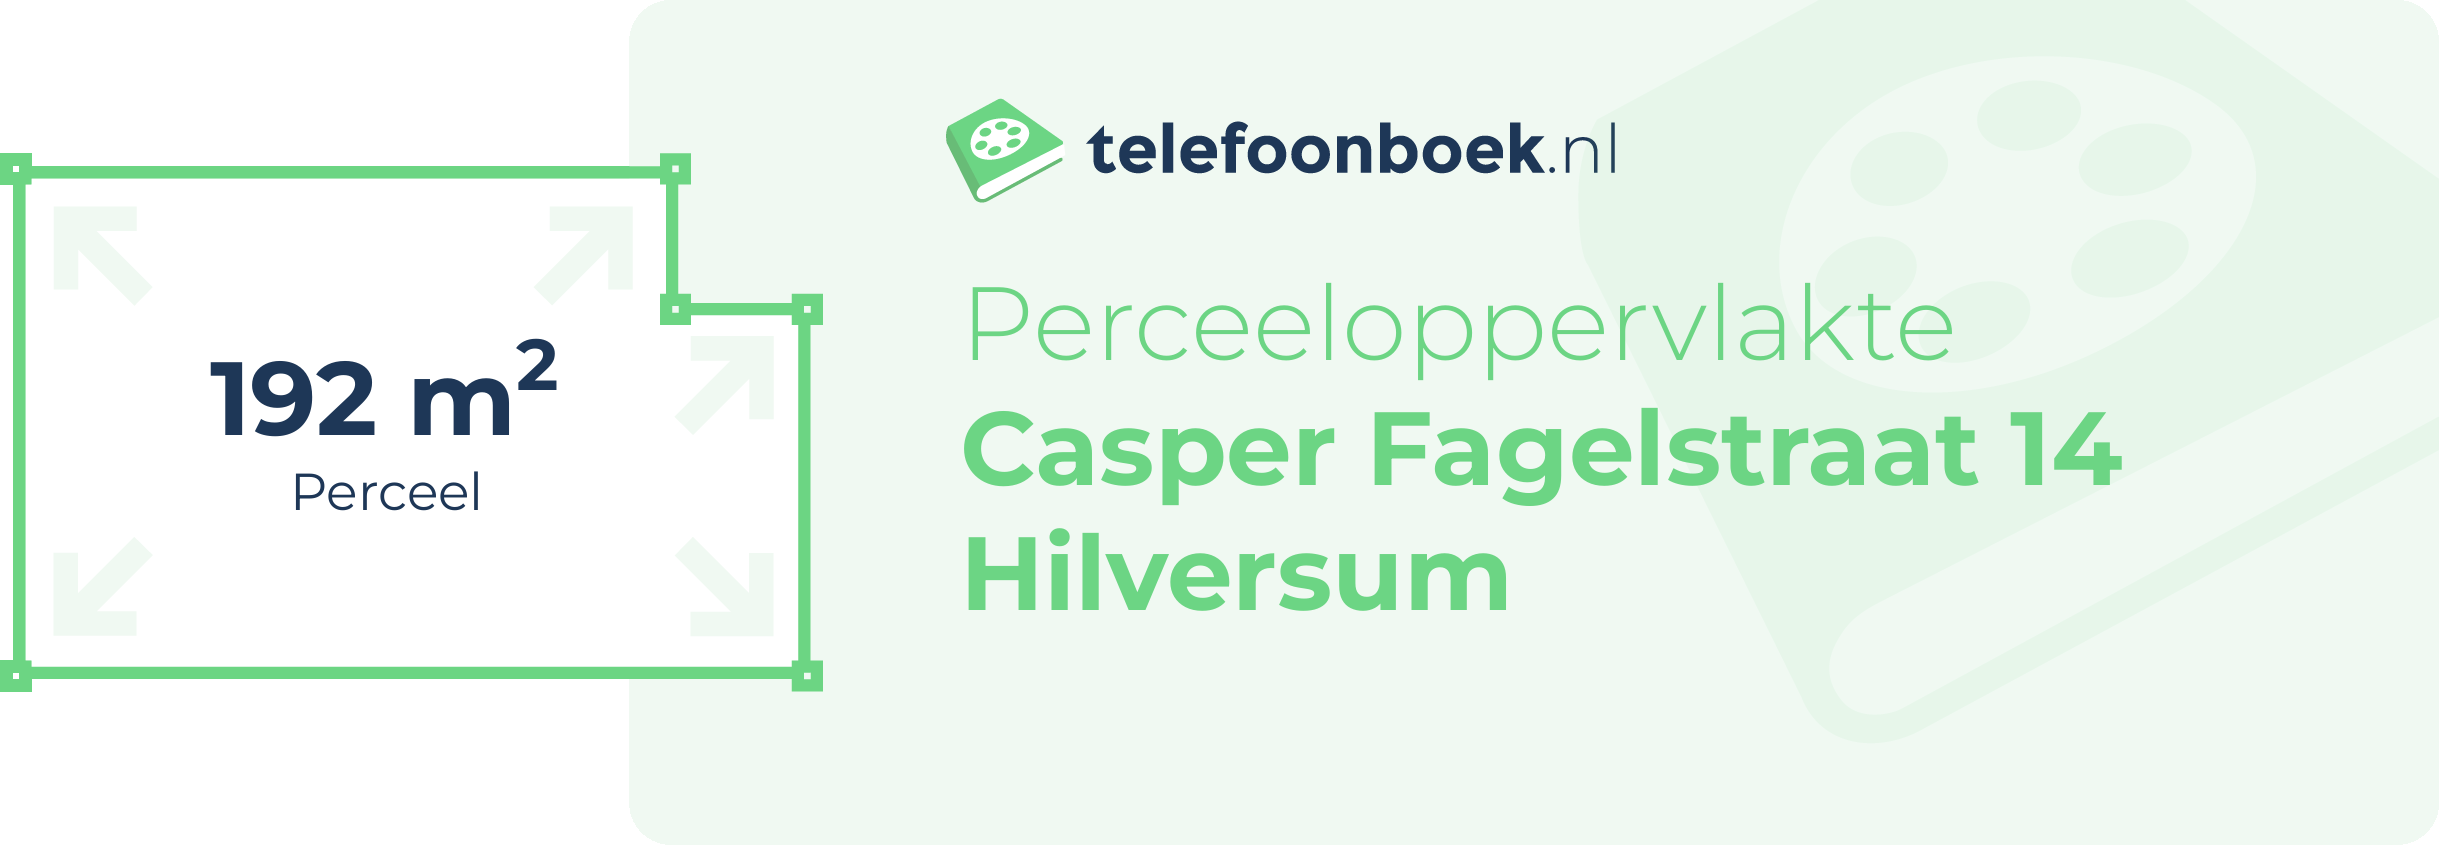 Perceeloppervlakte Casper Fagelstraat 14 Hilversum